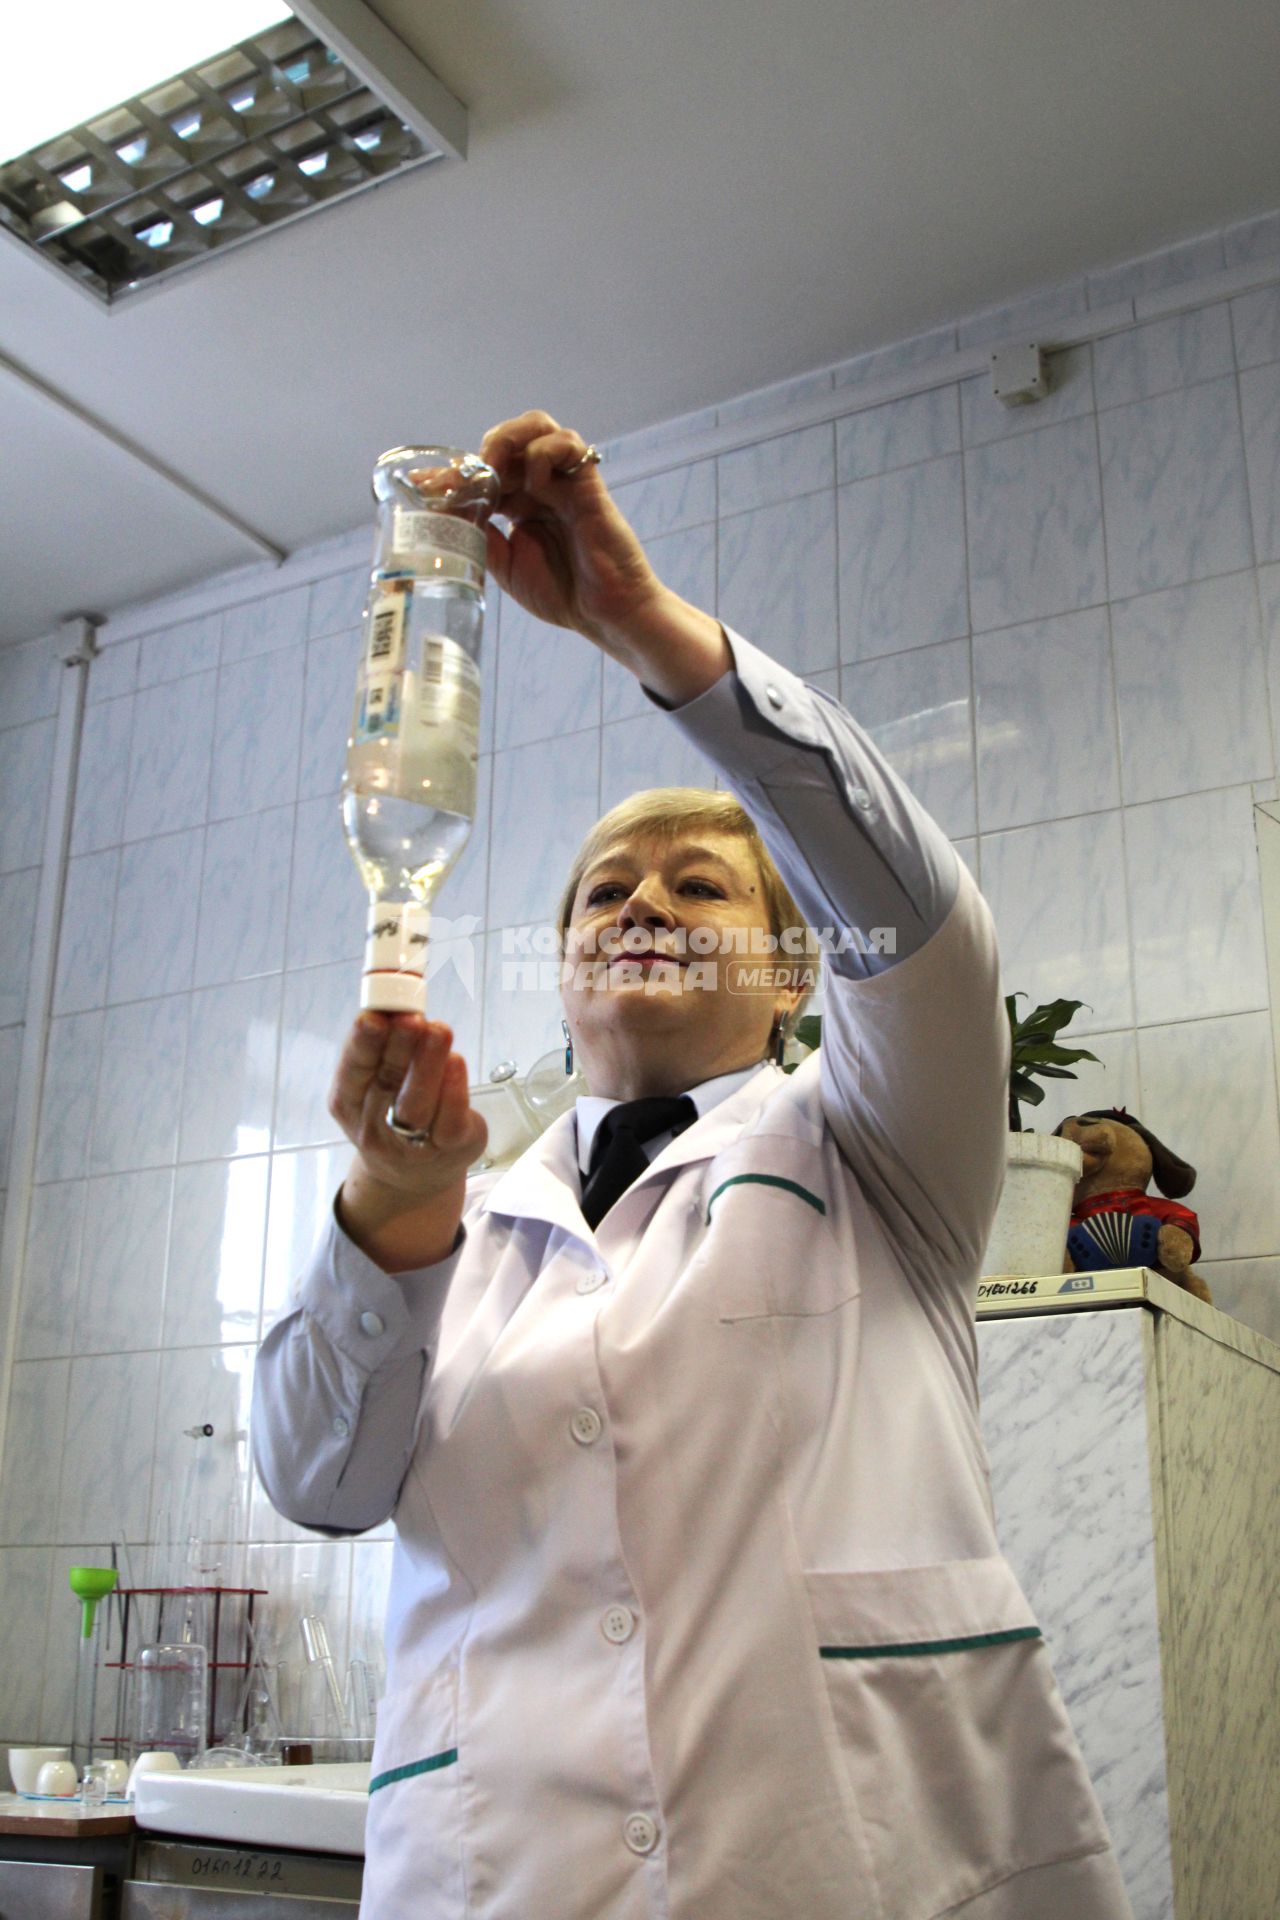 Иркутск.  Контроль качества алкогольной продукции в лаборатории.